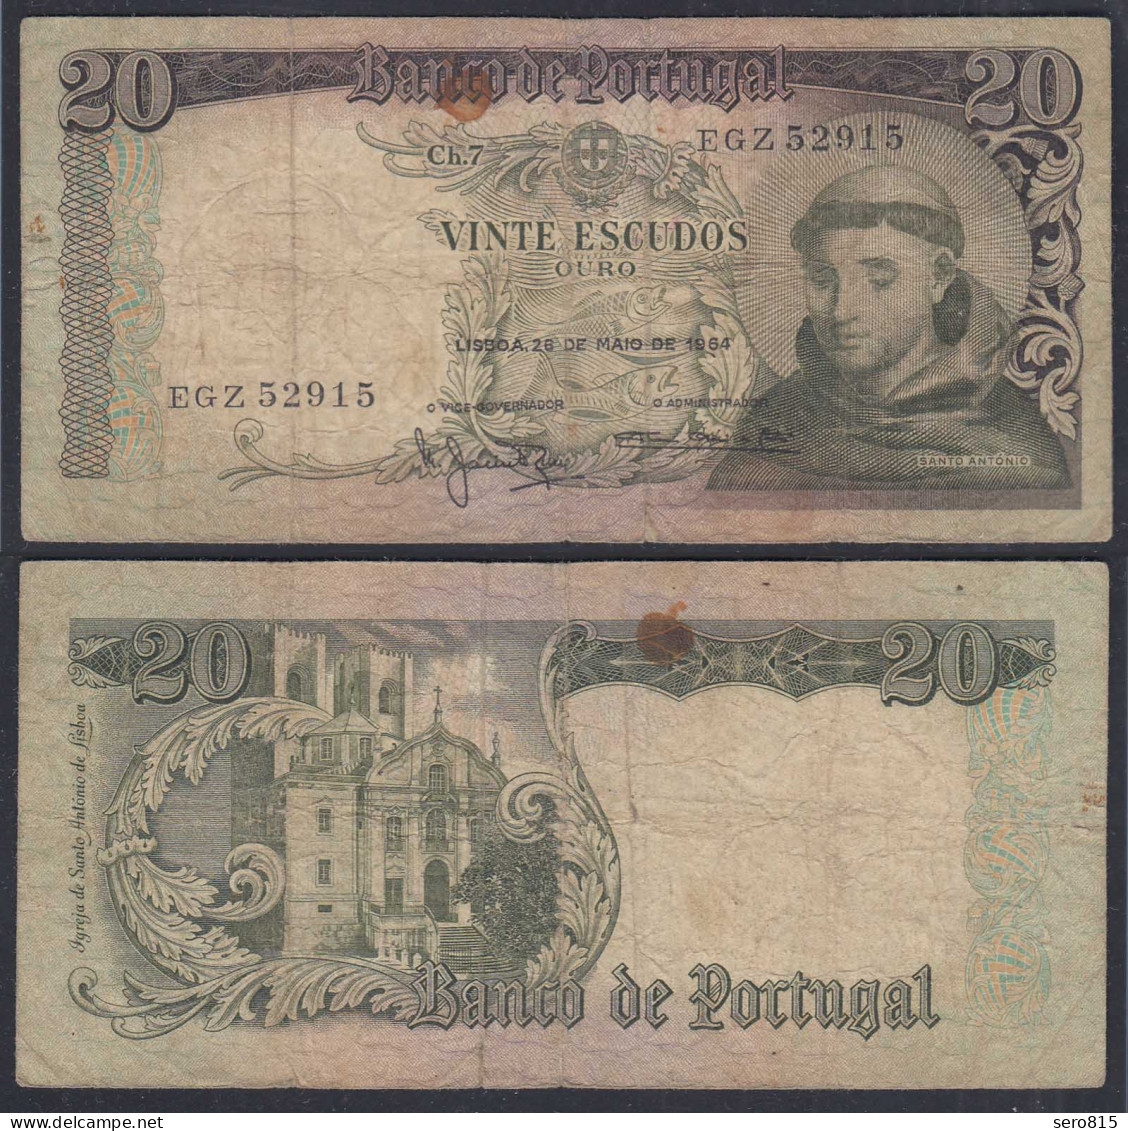 Portugal - 20 Escudos Banknote 1964 Pick 167 VG (5)    (27757 - Portugal